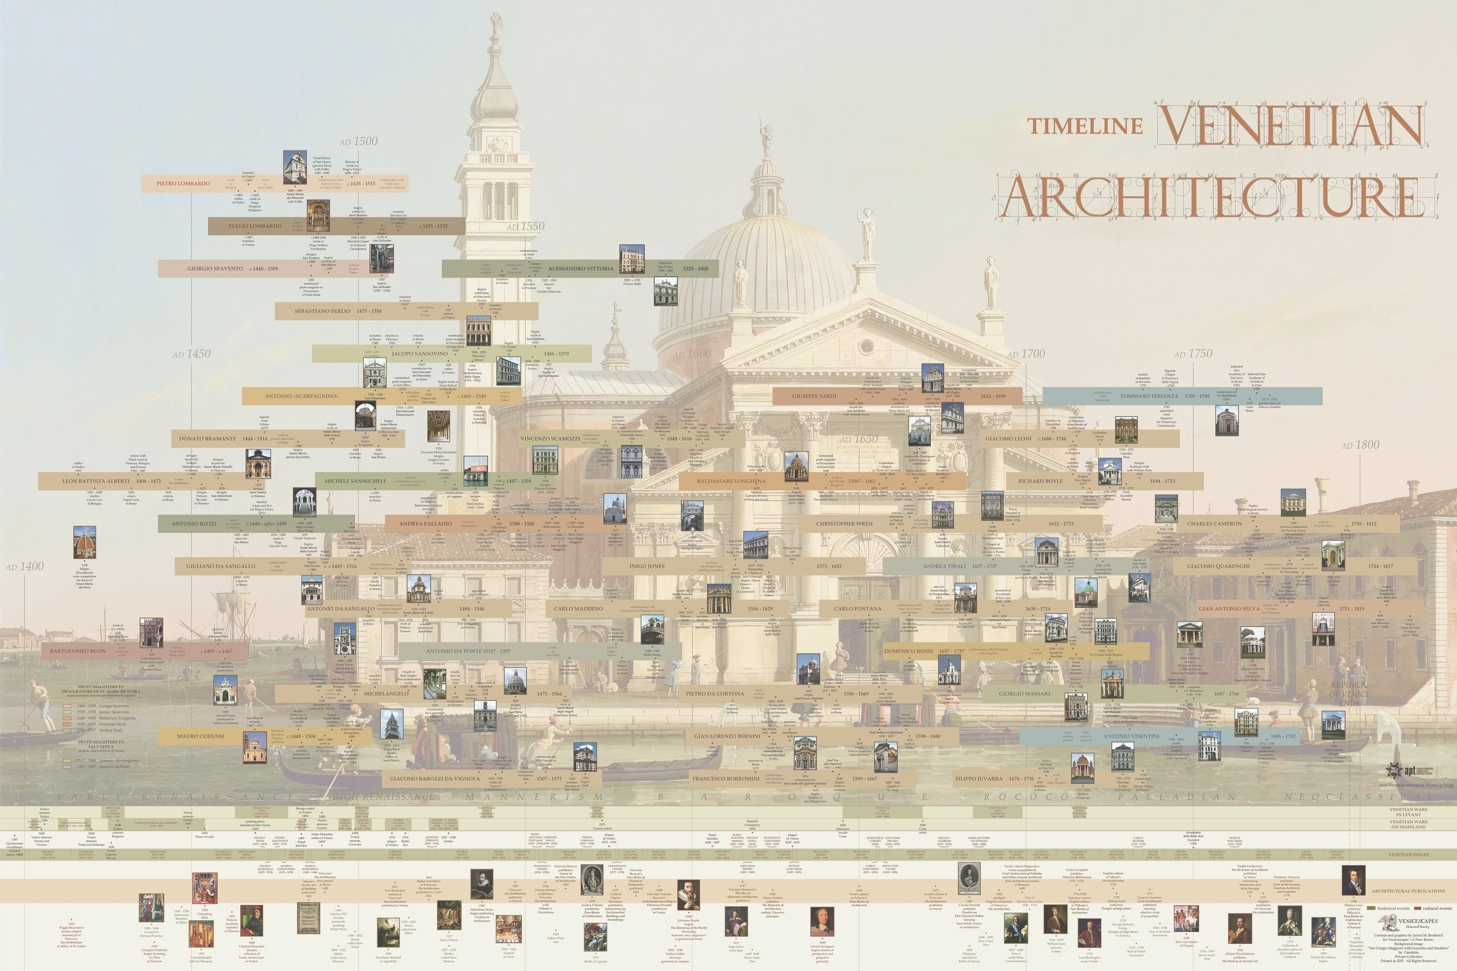 History of Venice timeline